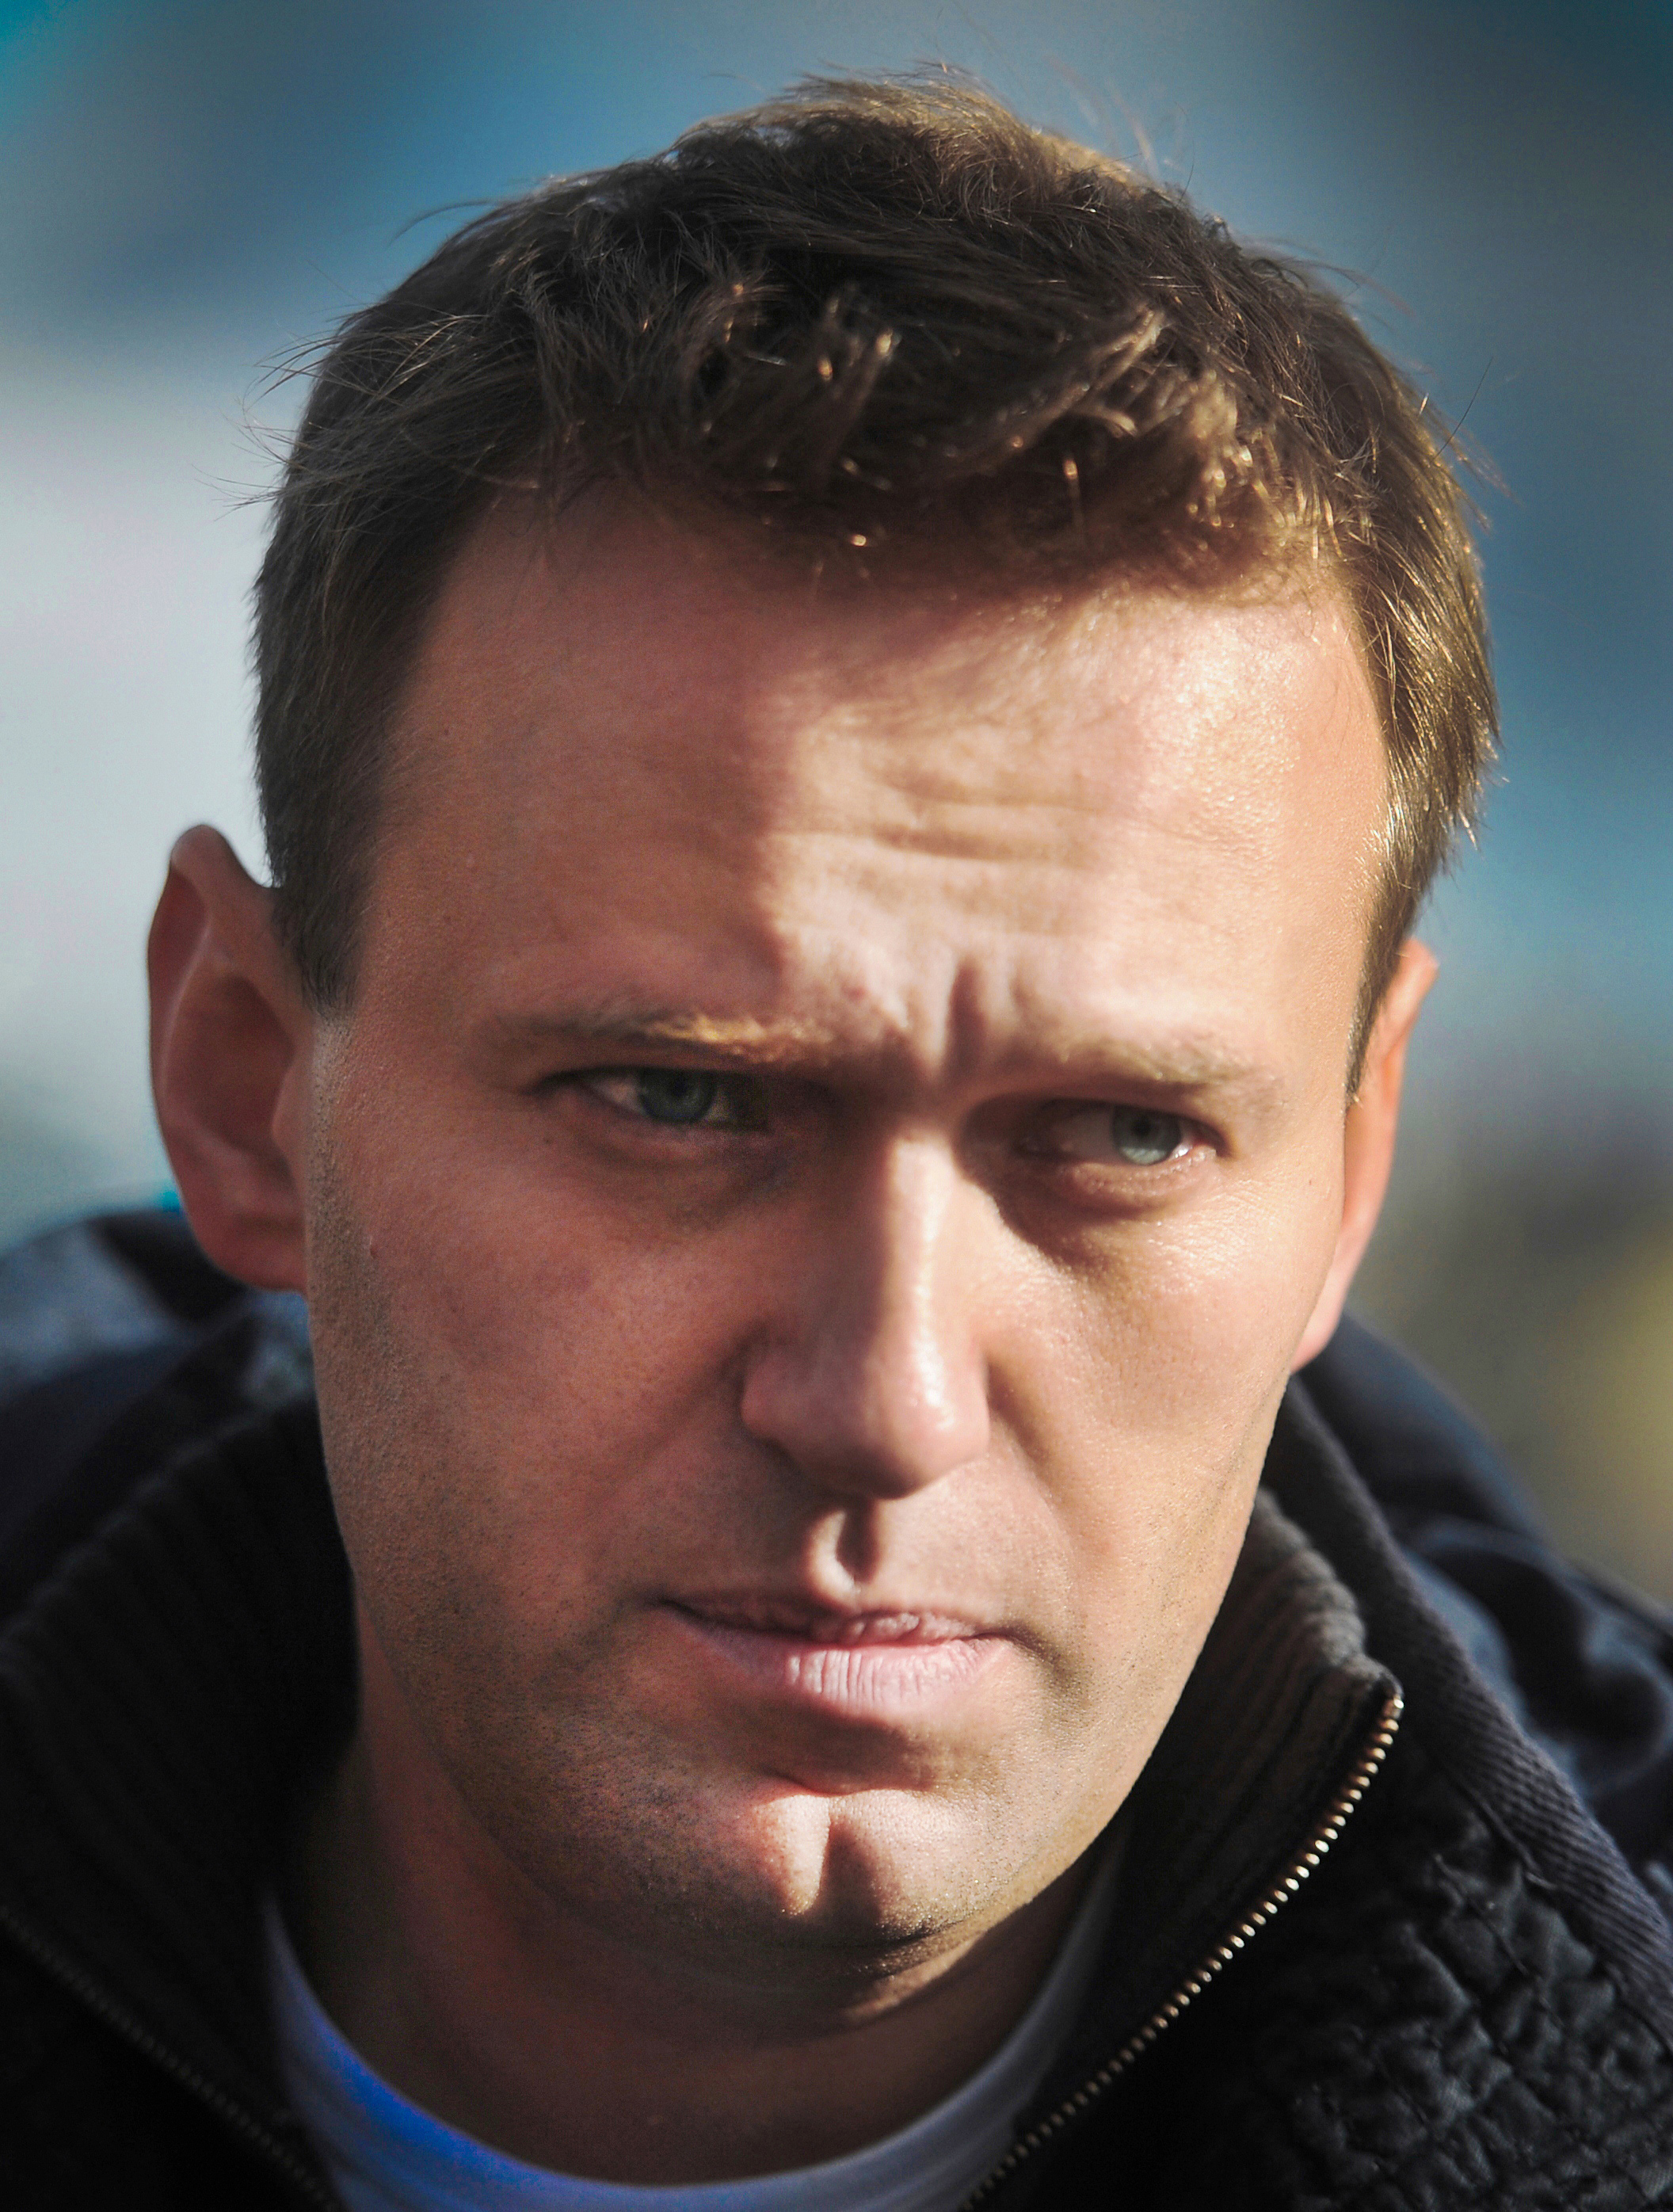 Навальный, Алексей Анатольевич — Википедия